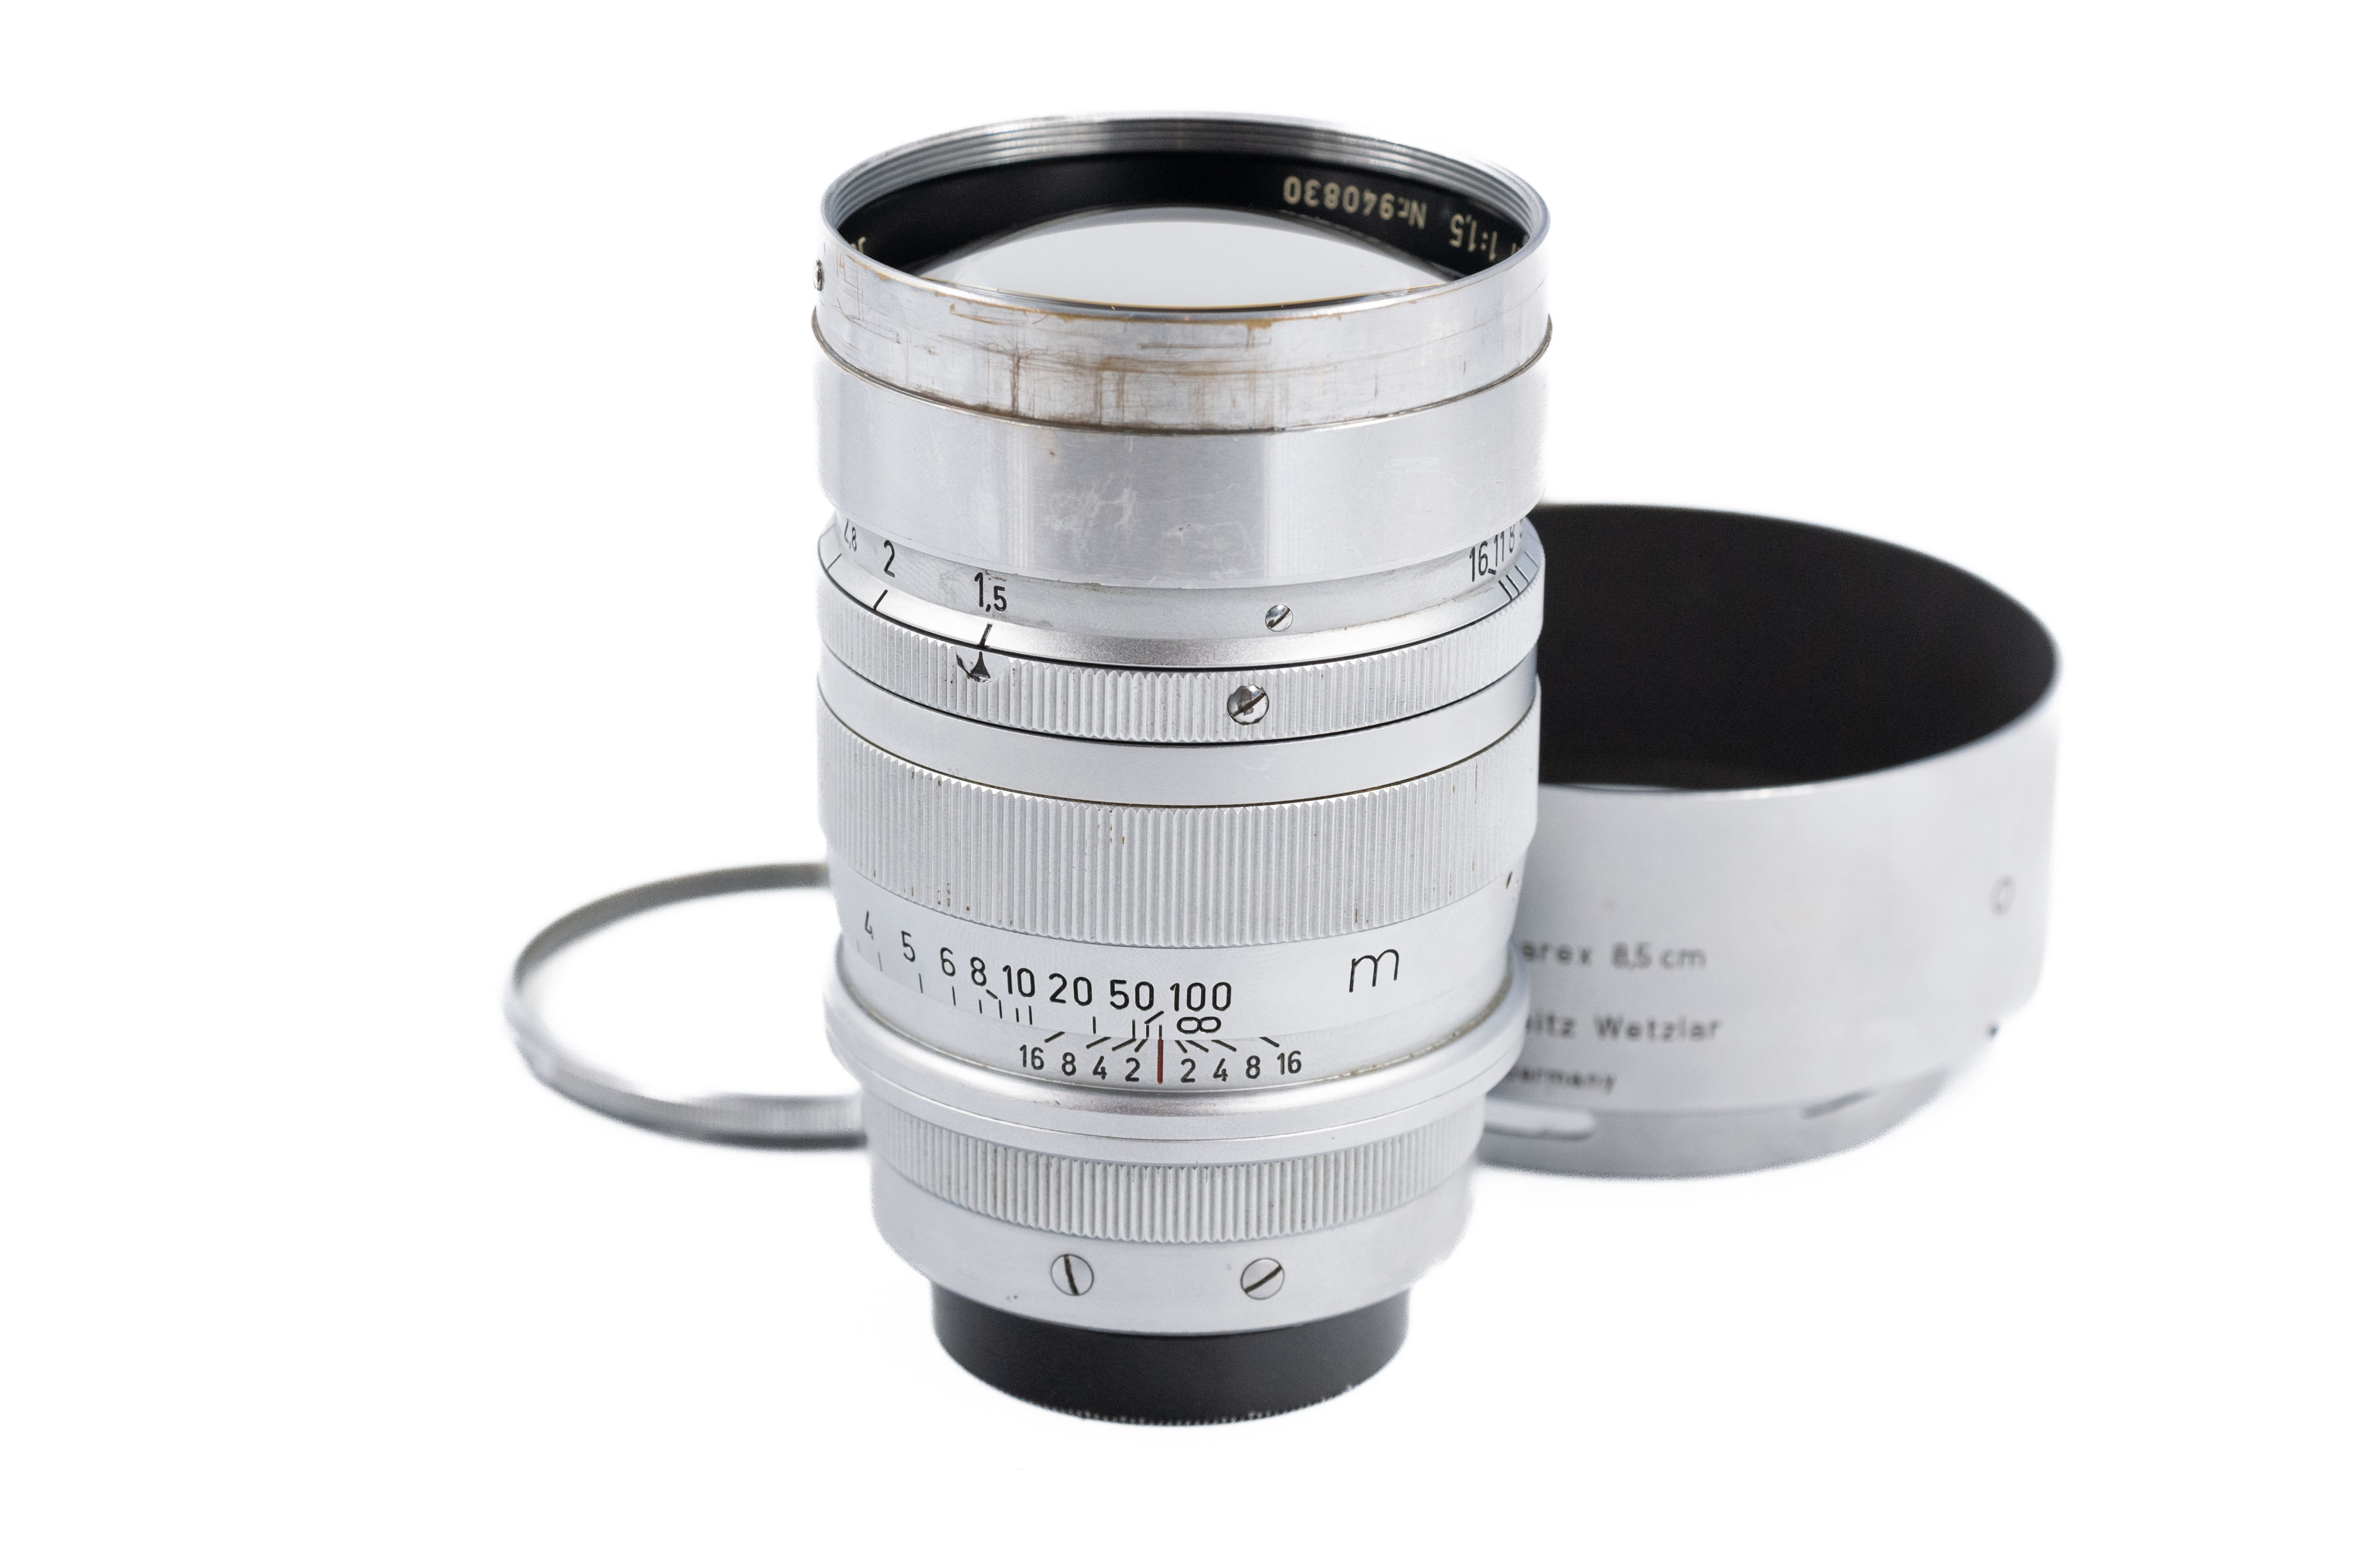 Leica Summarex 85mm f/1.5 11025